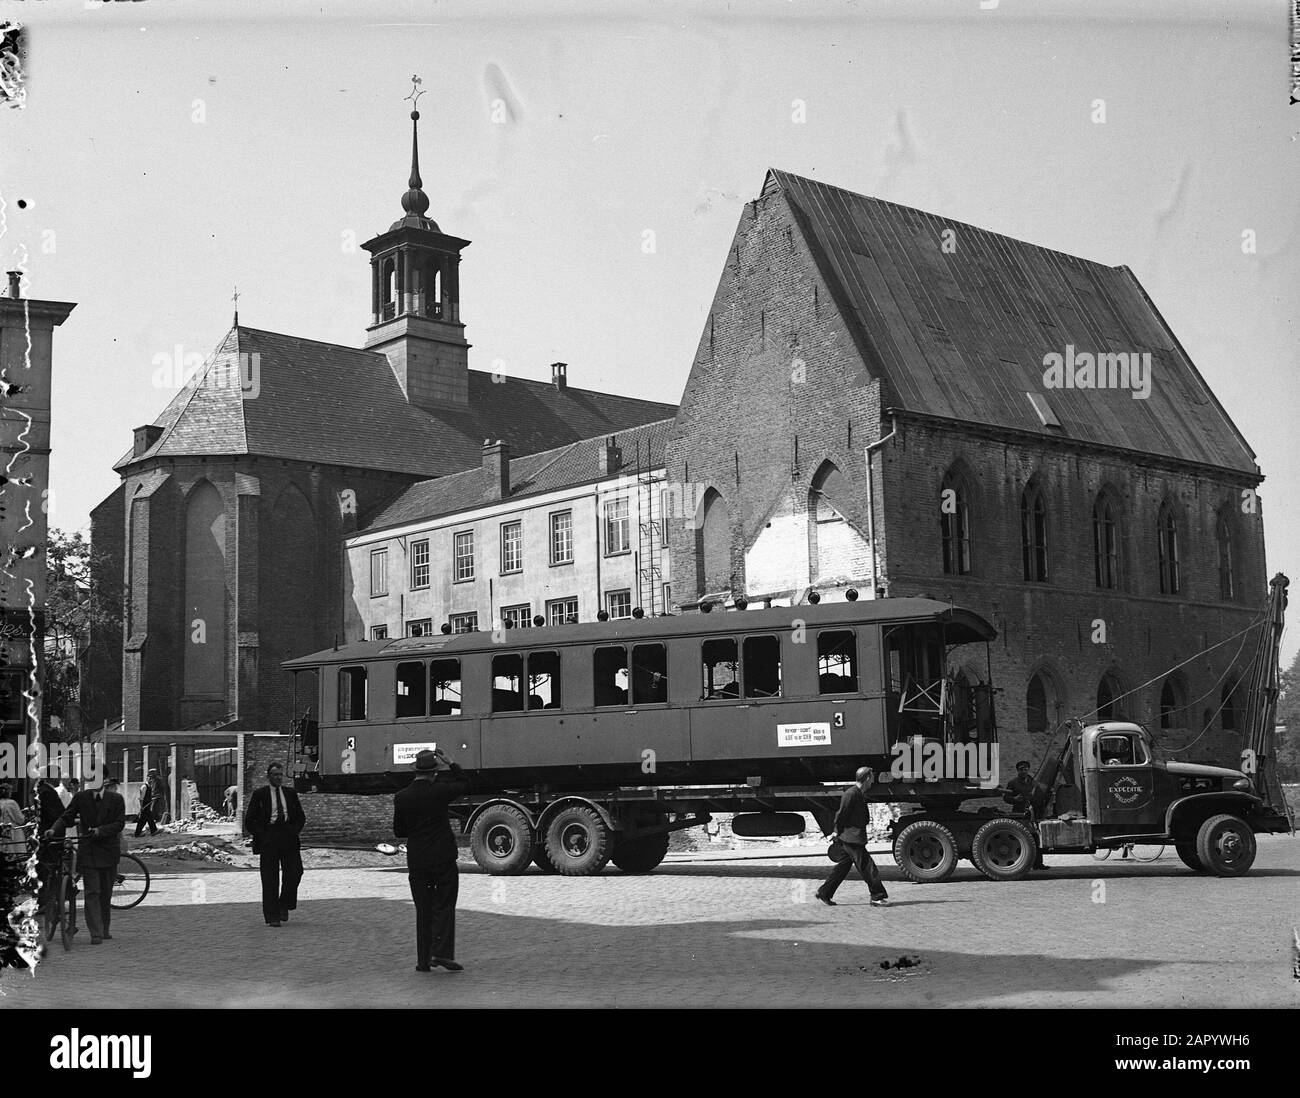 Vagone ferroviario come casa di emergenza a Zutphen Data: 8 Giugno 1948 Località: Gelderland, Zutphen Parole Chiave: Chiese, ferrovie, carri, ricostruzione, alloggio Foto Stock